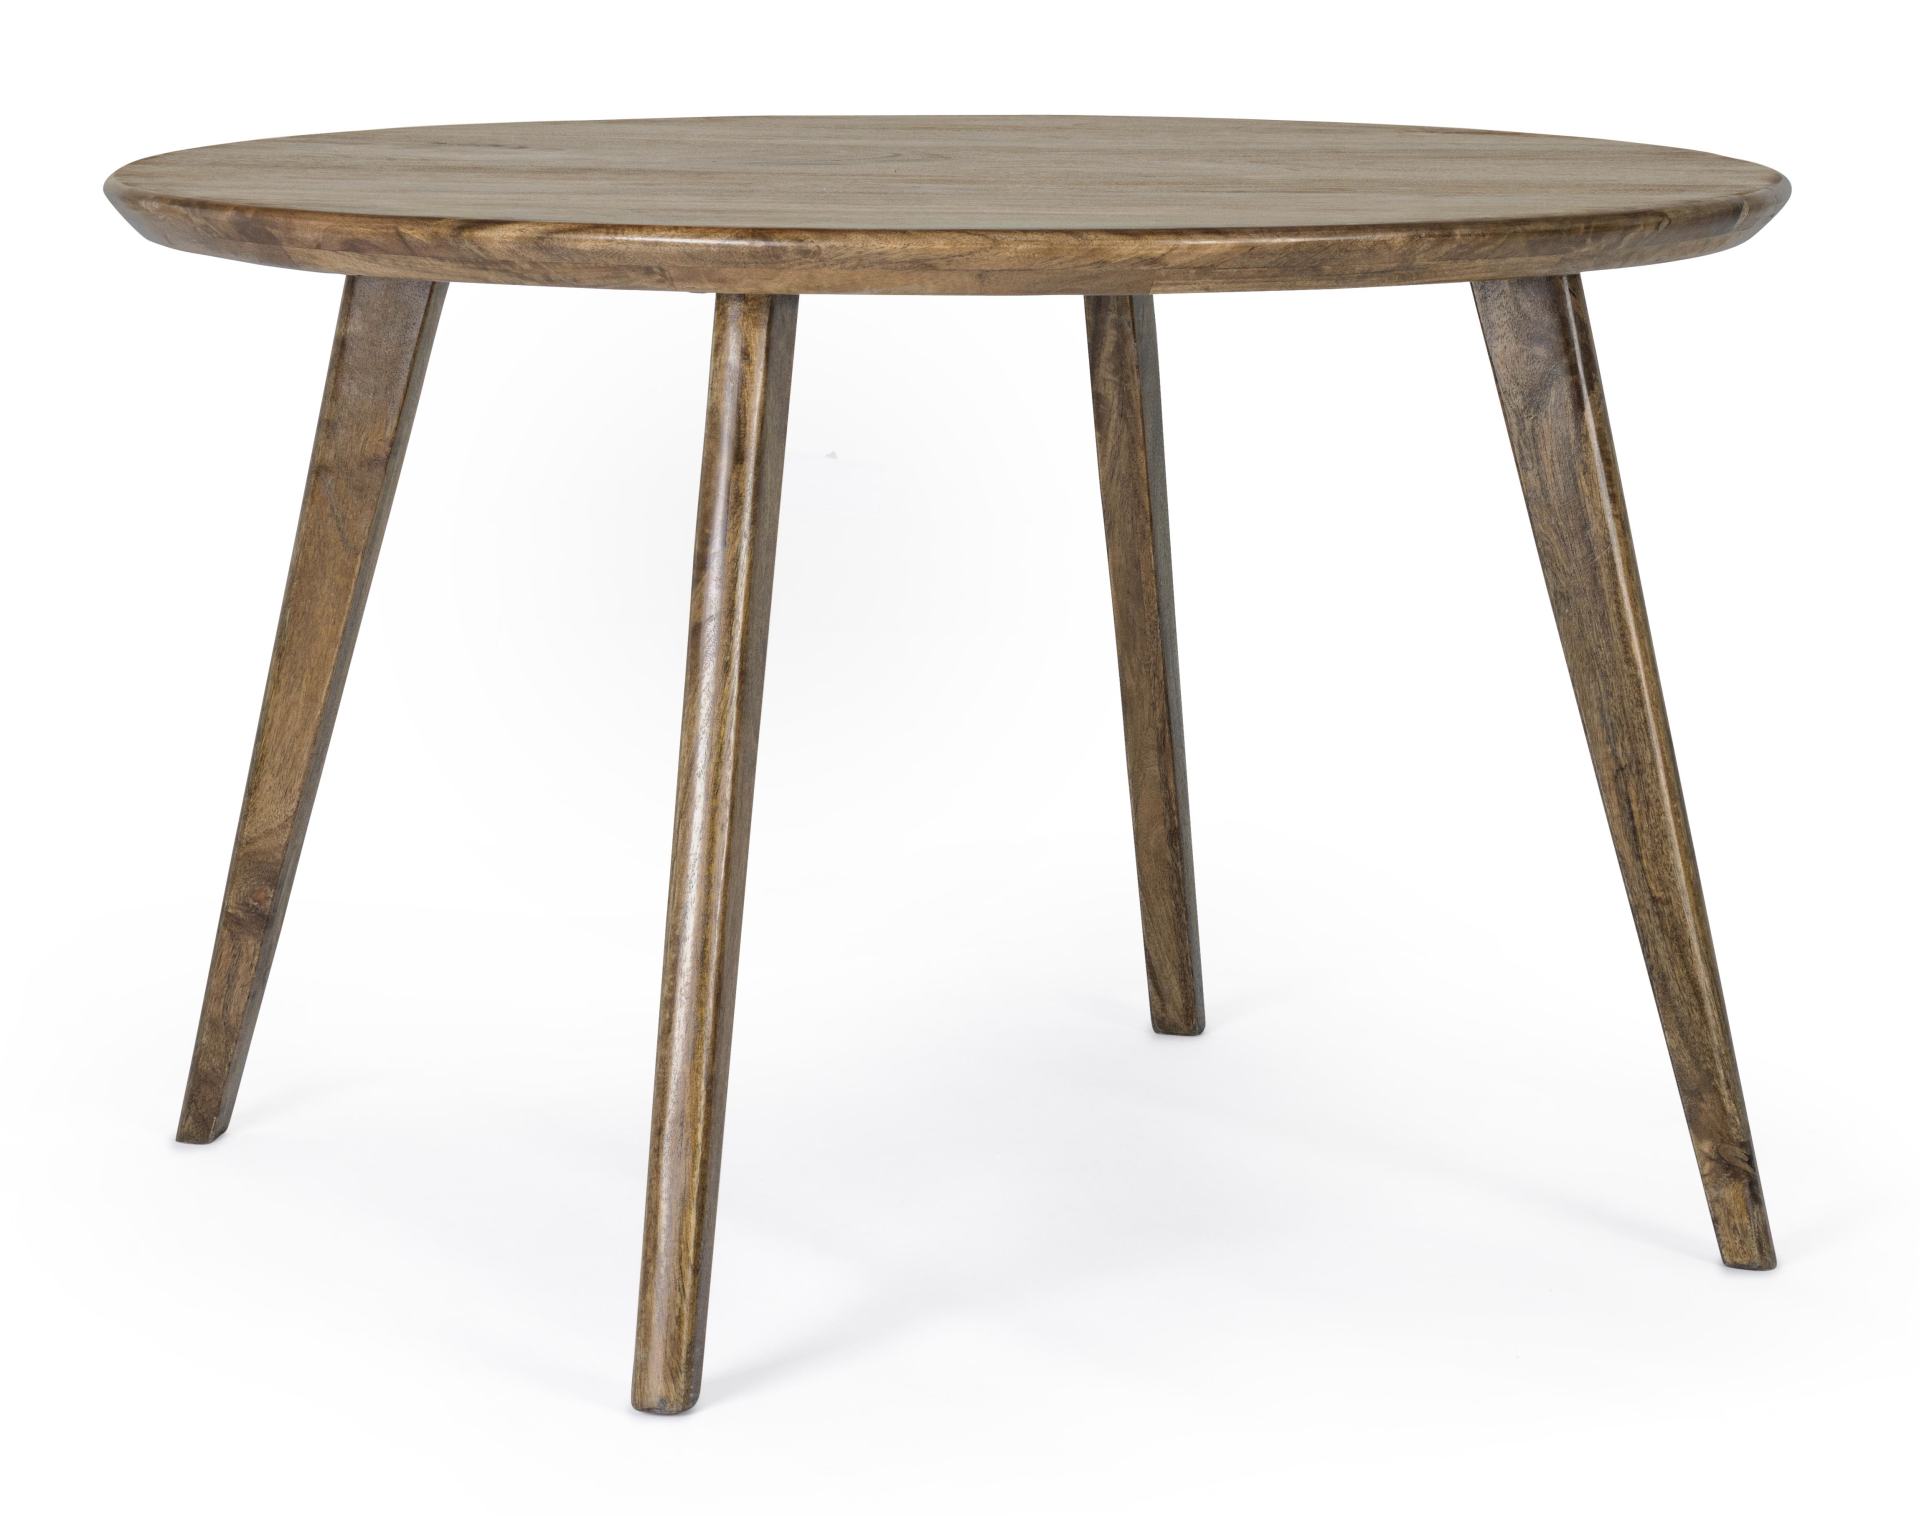 Der Esstisch Sylvester überzeugt mit seinem klassischem Design. Gefertigt wurde er aus Akazienholz, welches einen natürlichen Farbton besitzt. Das Gestell des Tisches ist auch aus Akazienholz. Der Tisch besitzt einen Durchmesser von 120 cm.